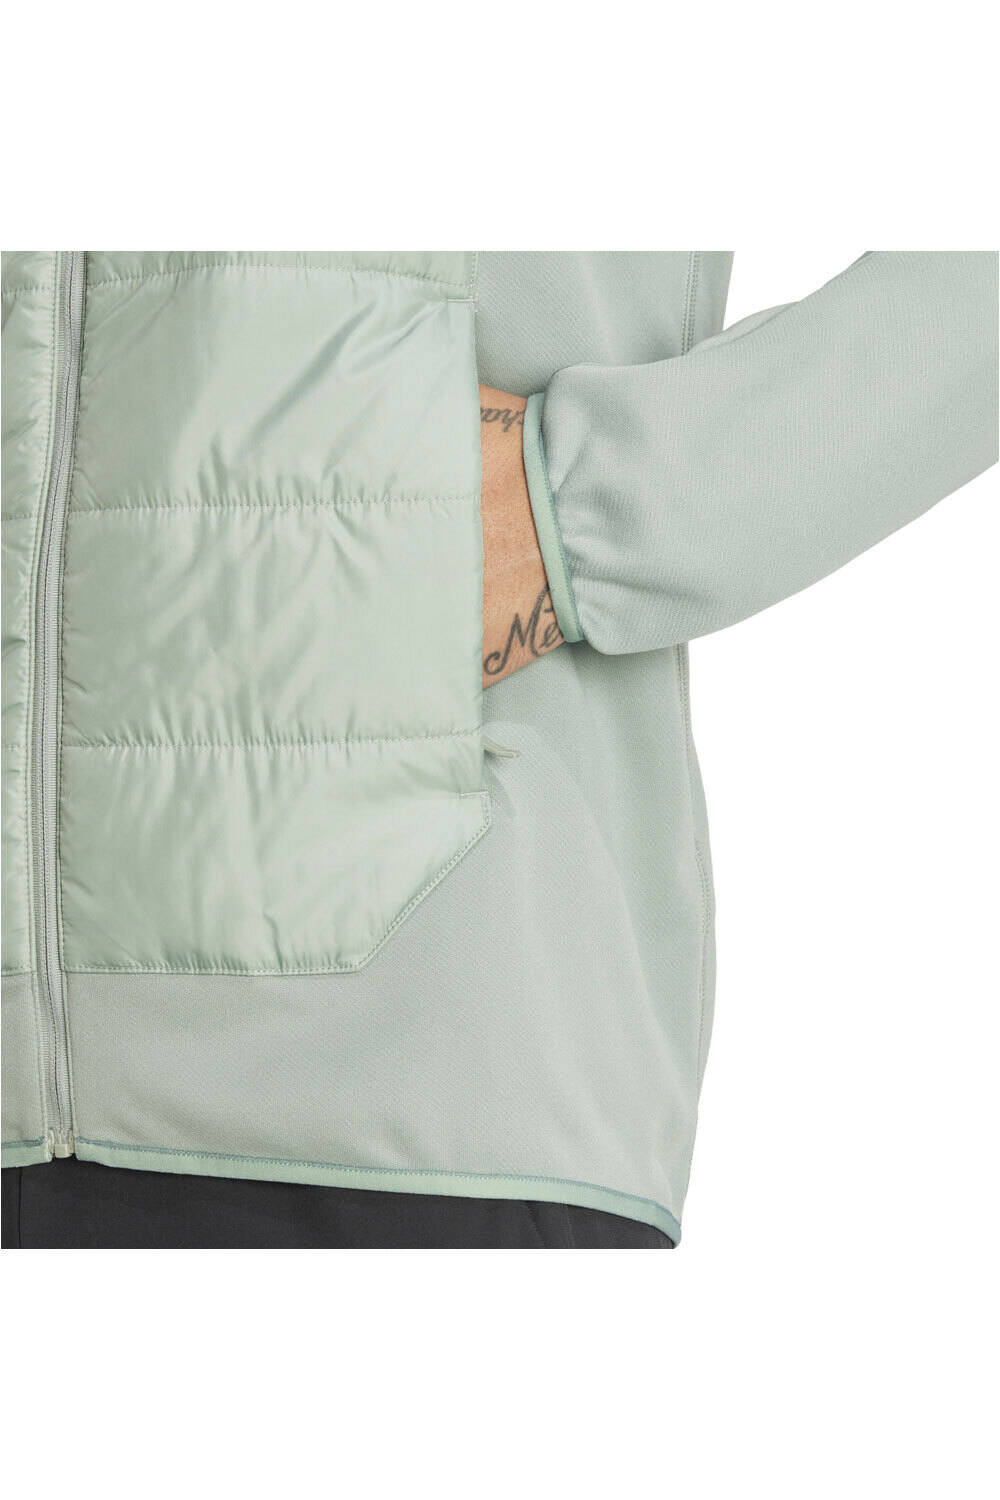 adidas chaqueta outdoor hombre MULTI HYB JKT vista detalle